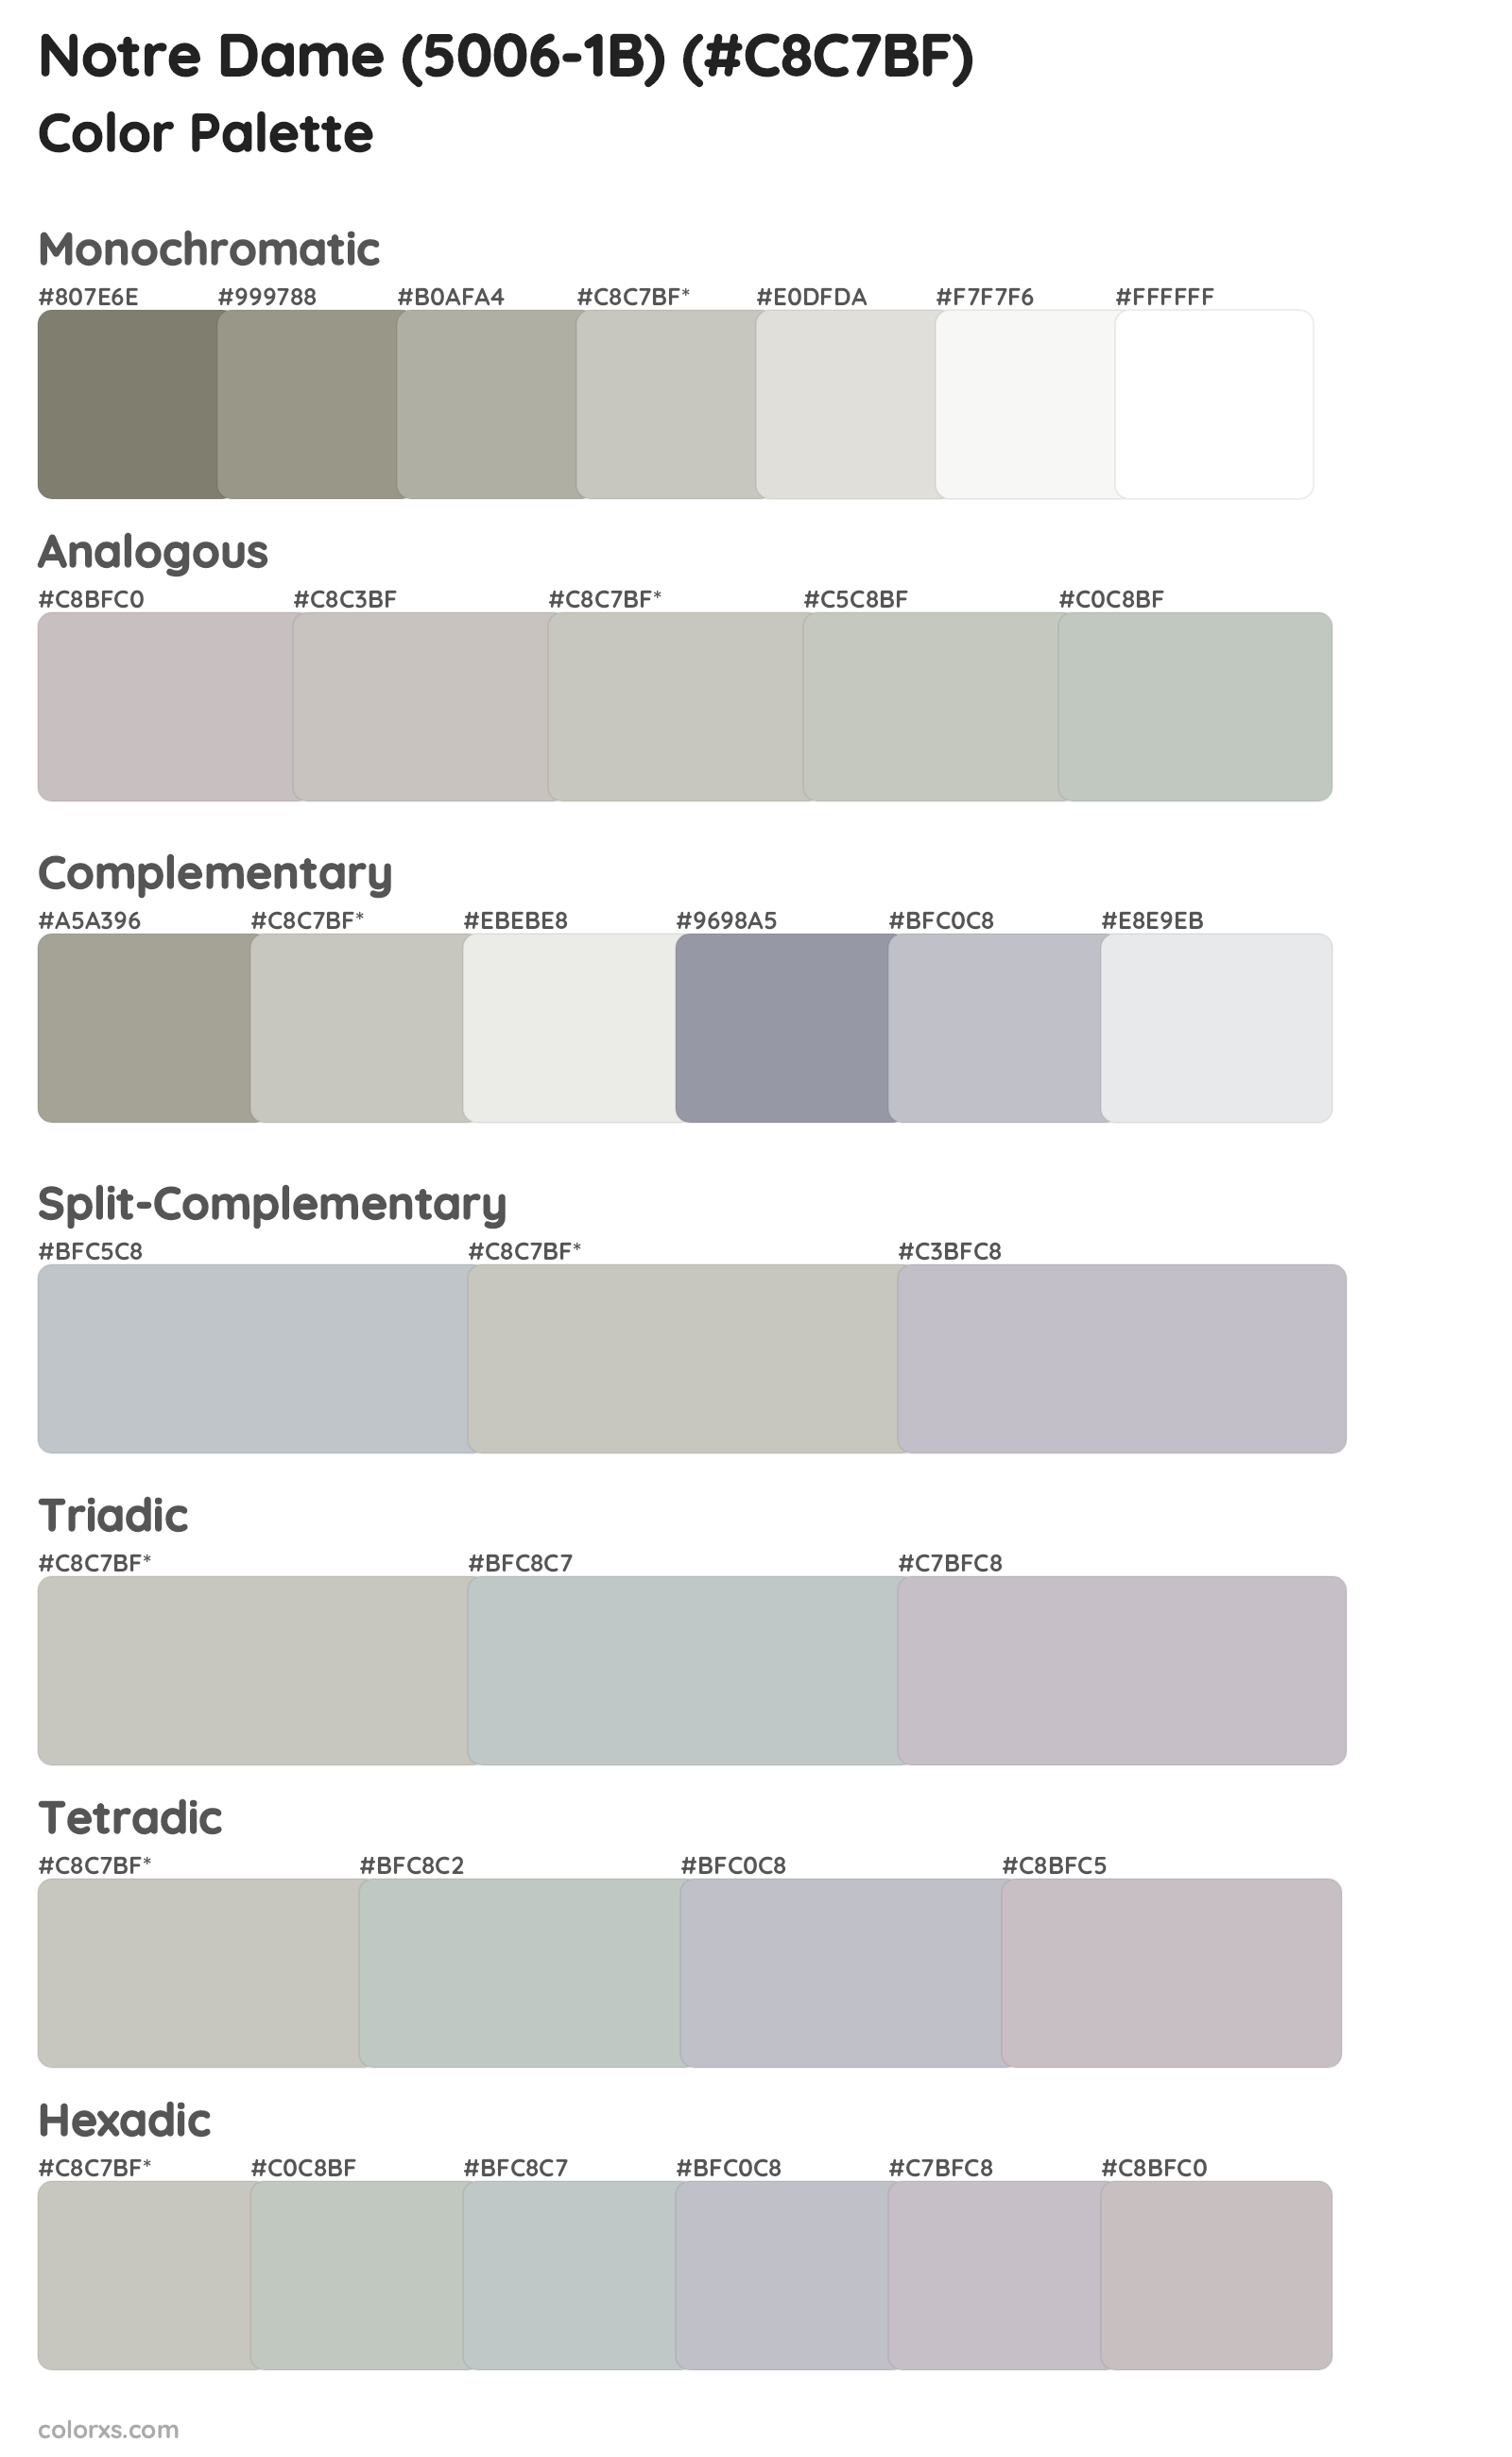 Notre Dame (5006-1B) Color Scheme Palettes